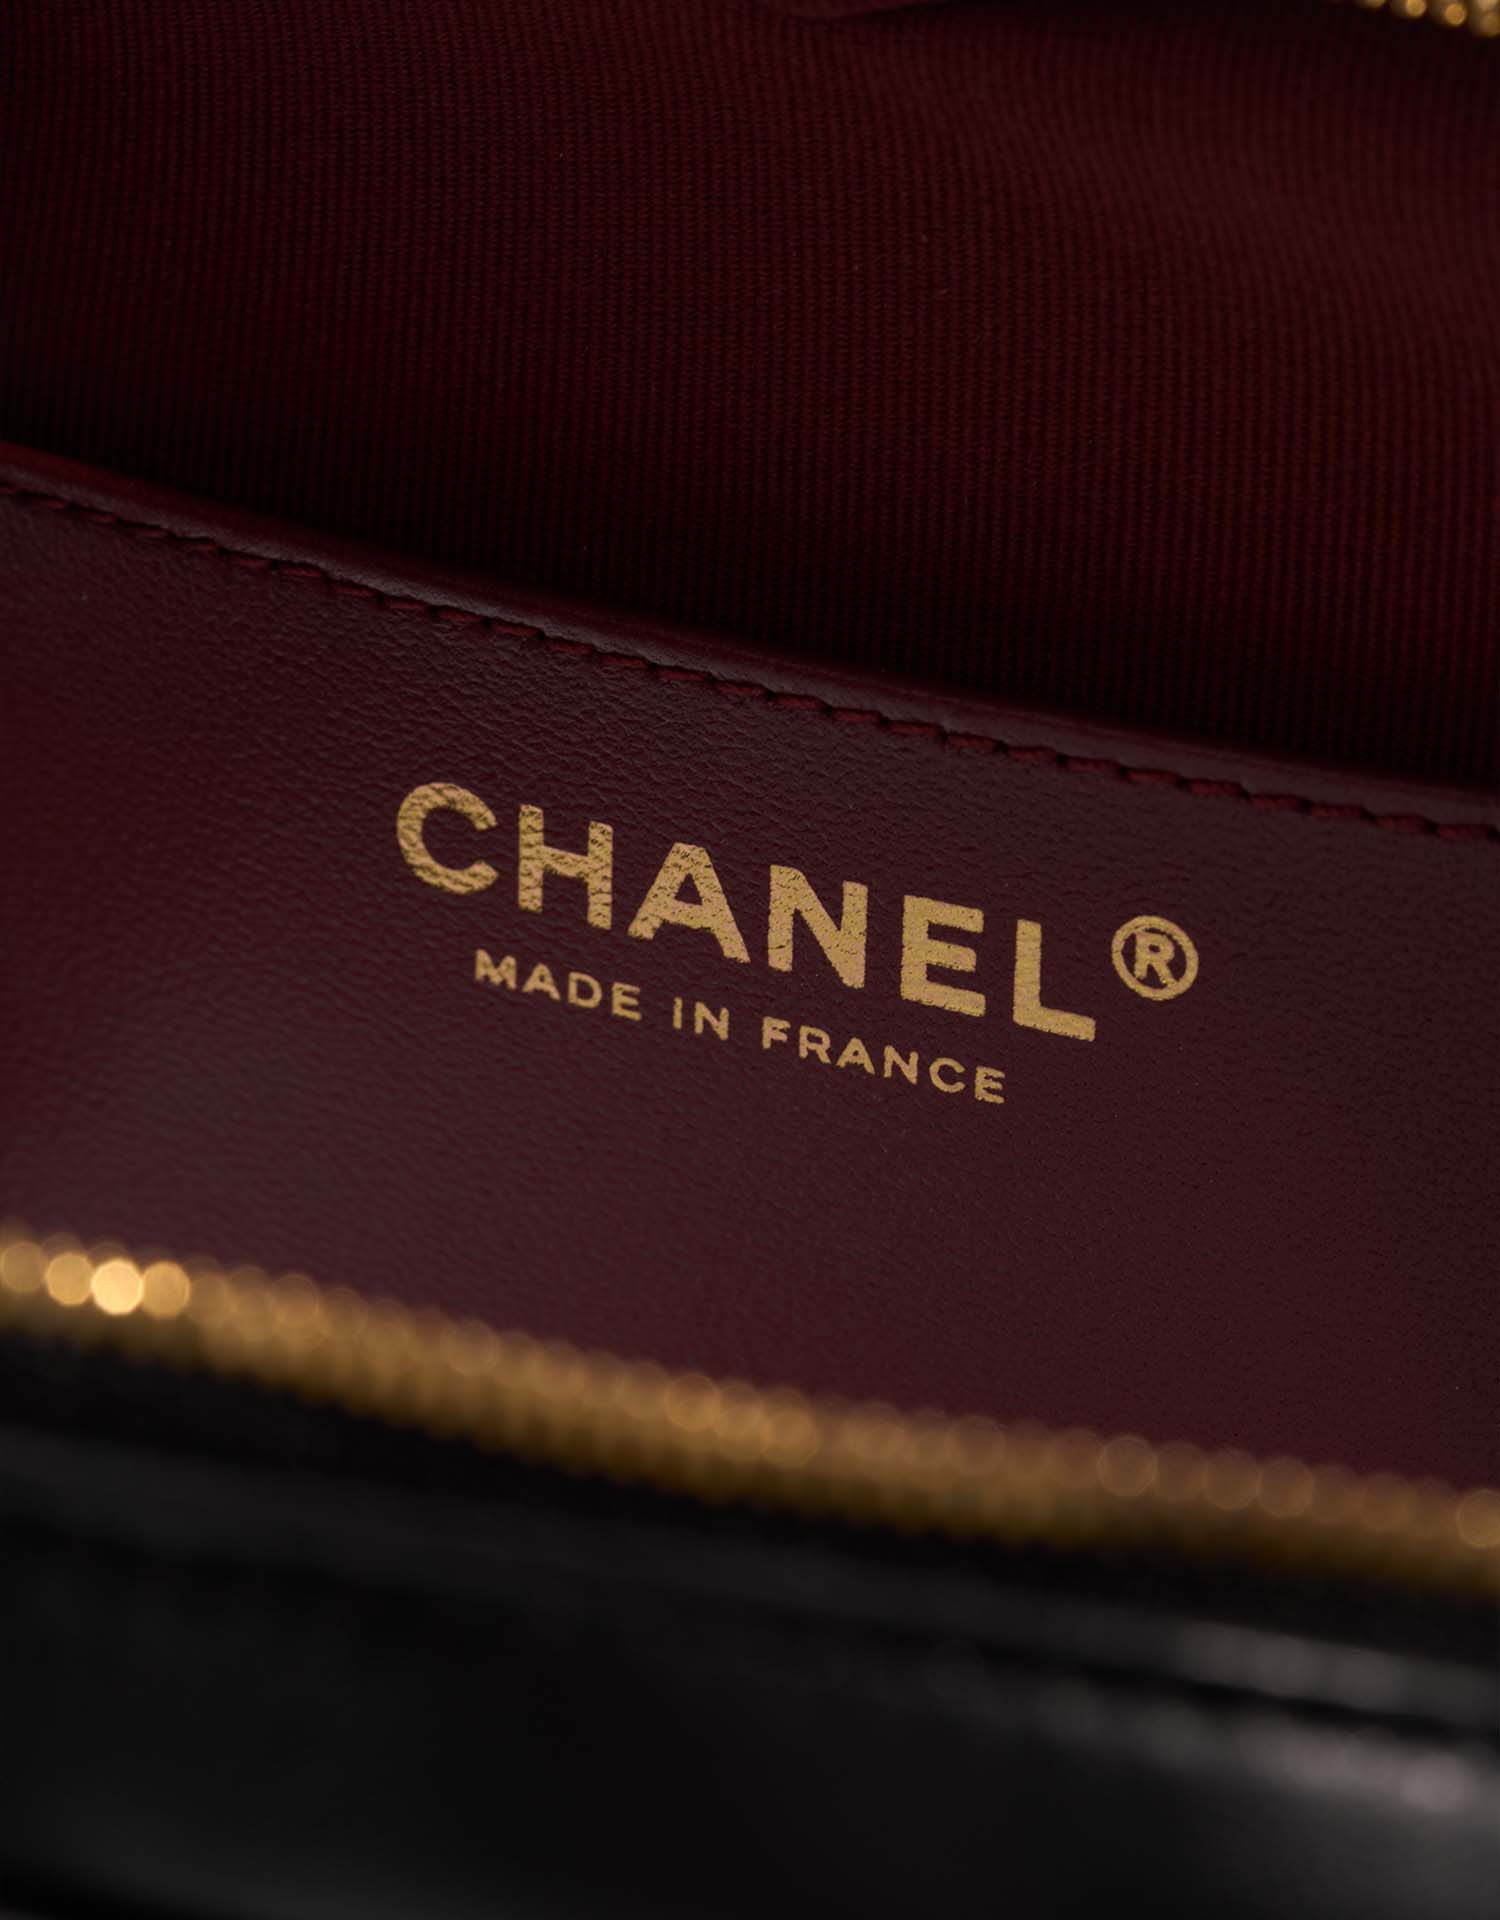 Chanel TimelessHeart Medium Black Logo | Verkaufen Sie Ihre Designer-Tasche auf Saclab.com